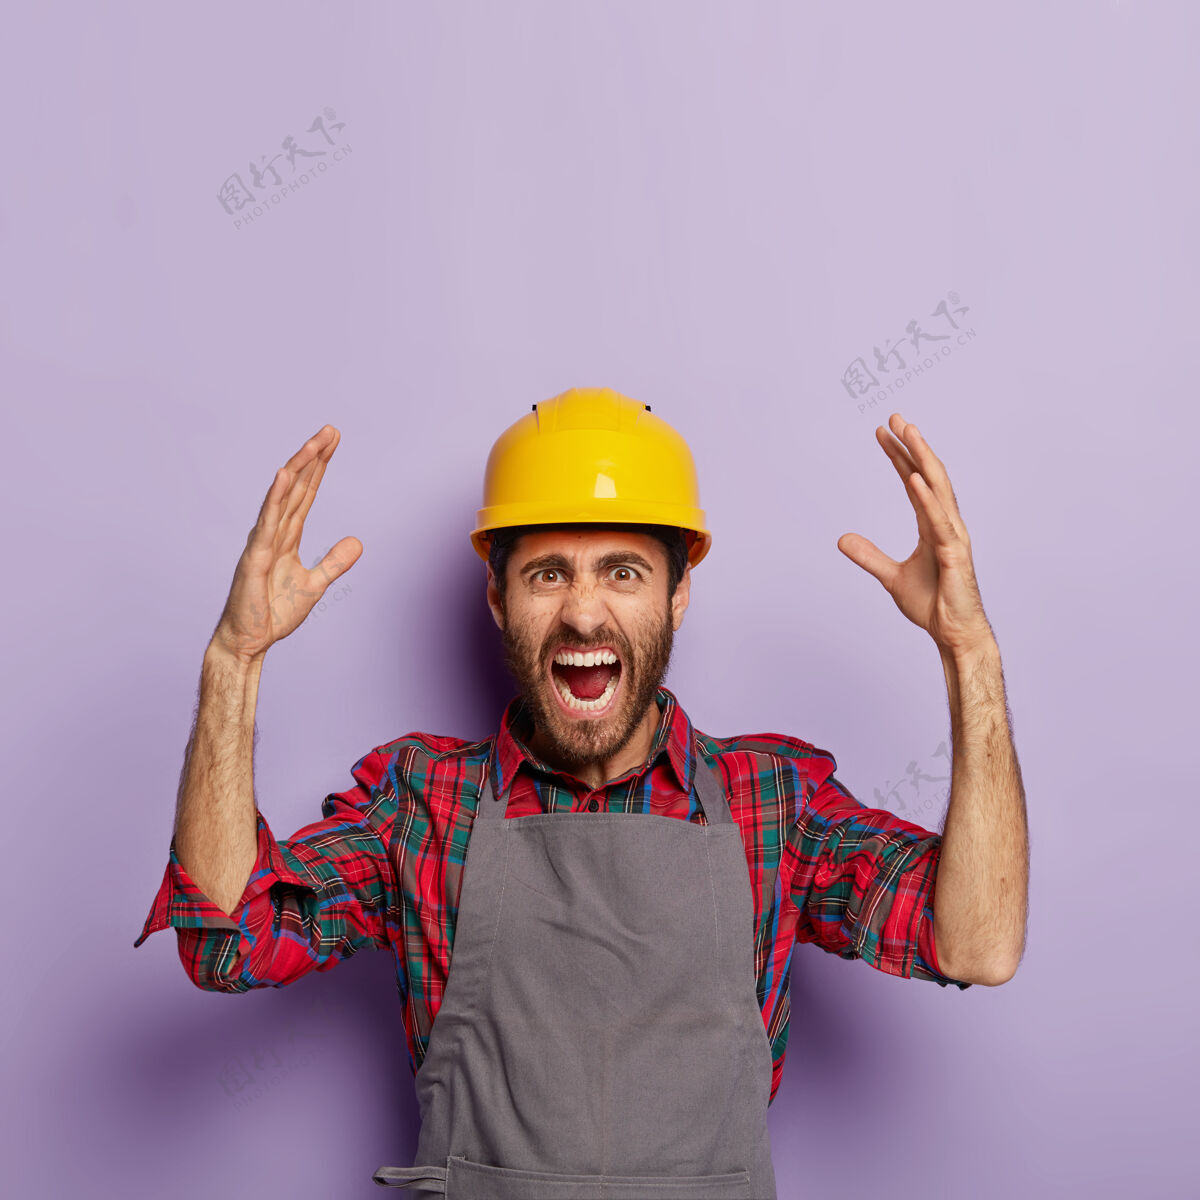 紫色恼怒的情绪化工人戴着黄色的建筑防护头盔 格子衬衫和围裙 有很多工作要做 带着压力和恐慌尖叫 情绪化地举起手臂机械围裙修理